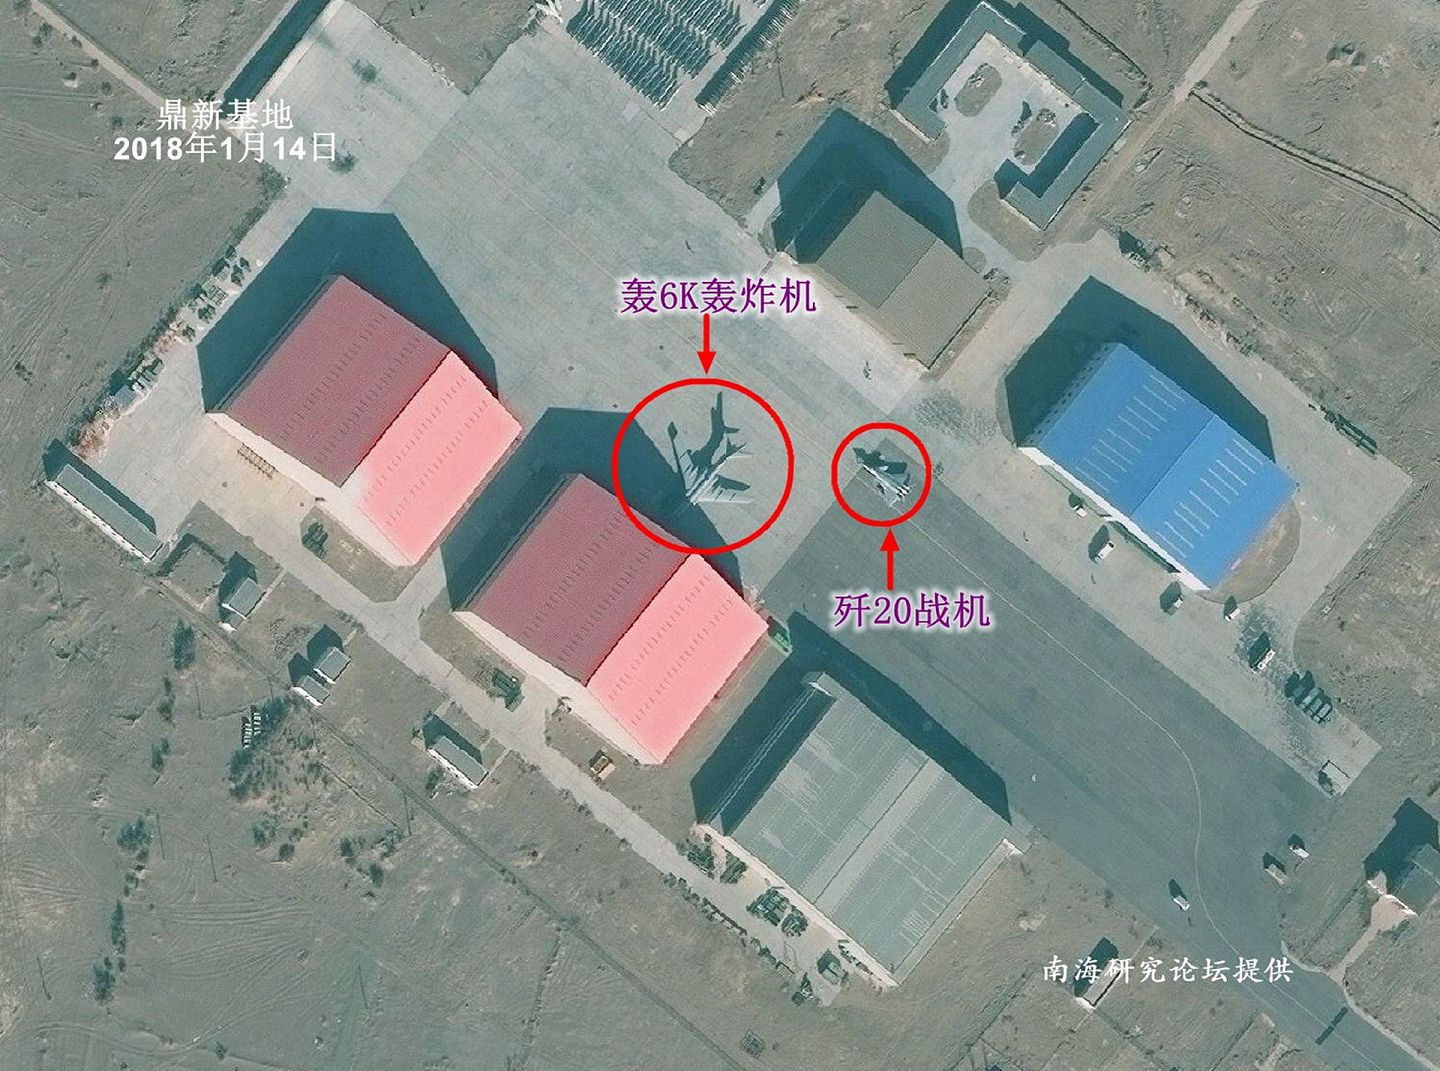 2018年1月14日，轰-6K和歼-20战斗机同时现身中国甘肃鼎新空军基地。（南海研究论坛）